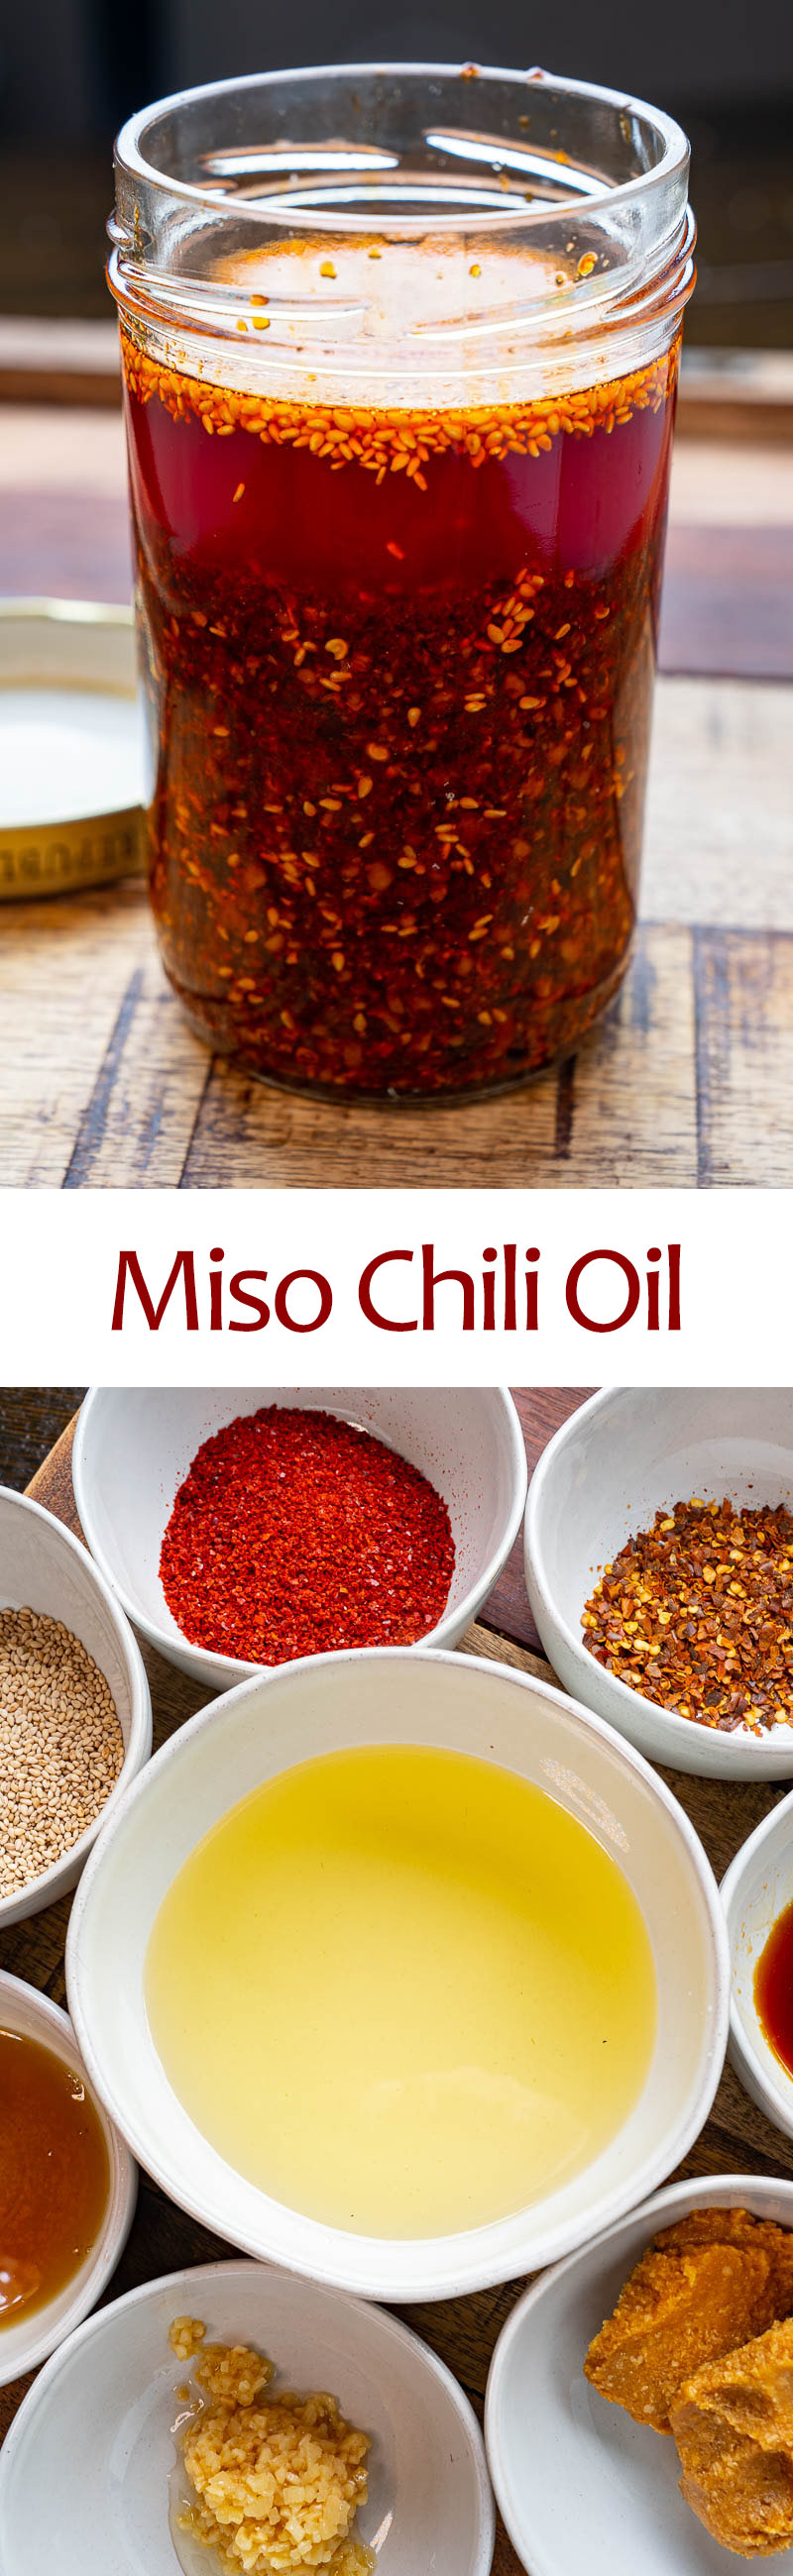 Miso Chili Oil